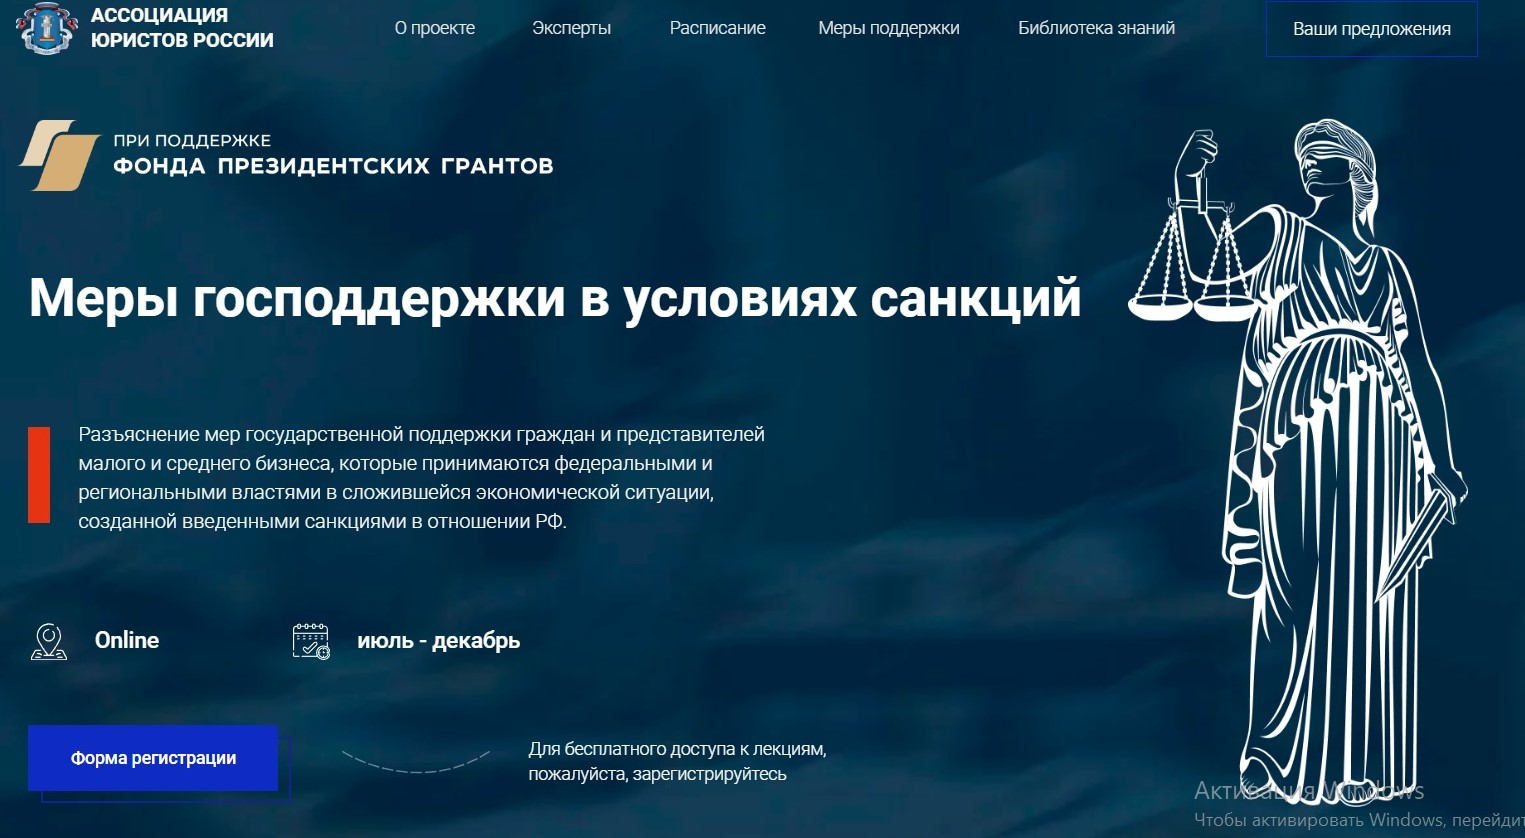 Ассоциация юристов России реализует проект «Разъяснение мер государственной поддержки граждан и представителей малого бизнеса в условиях санкций»